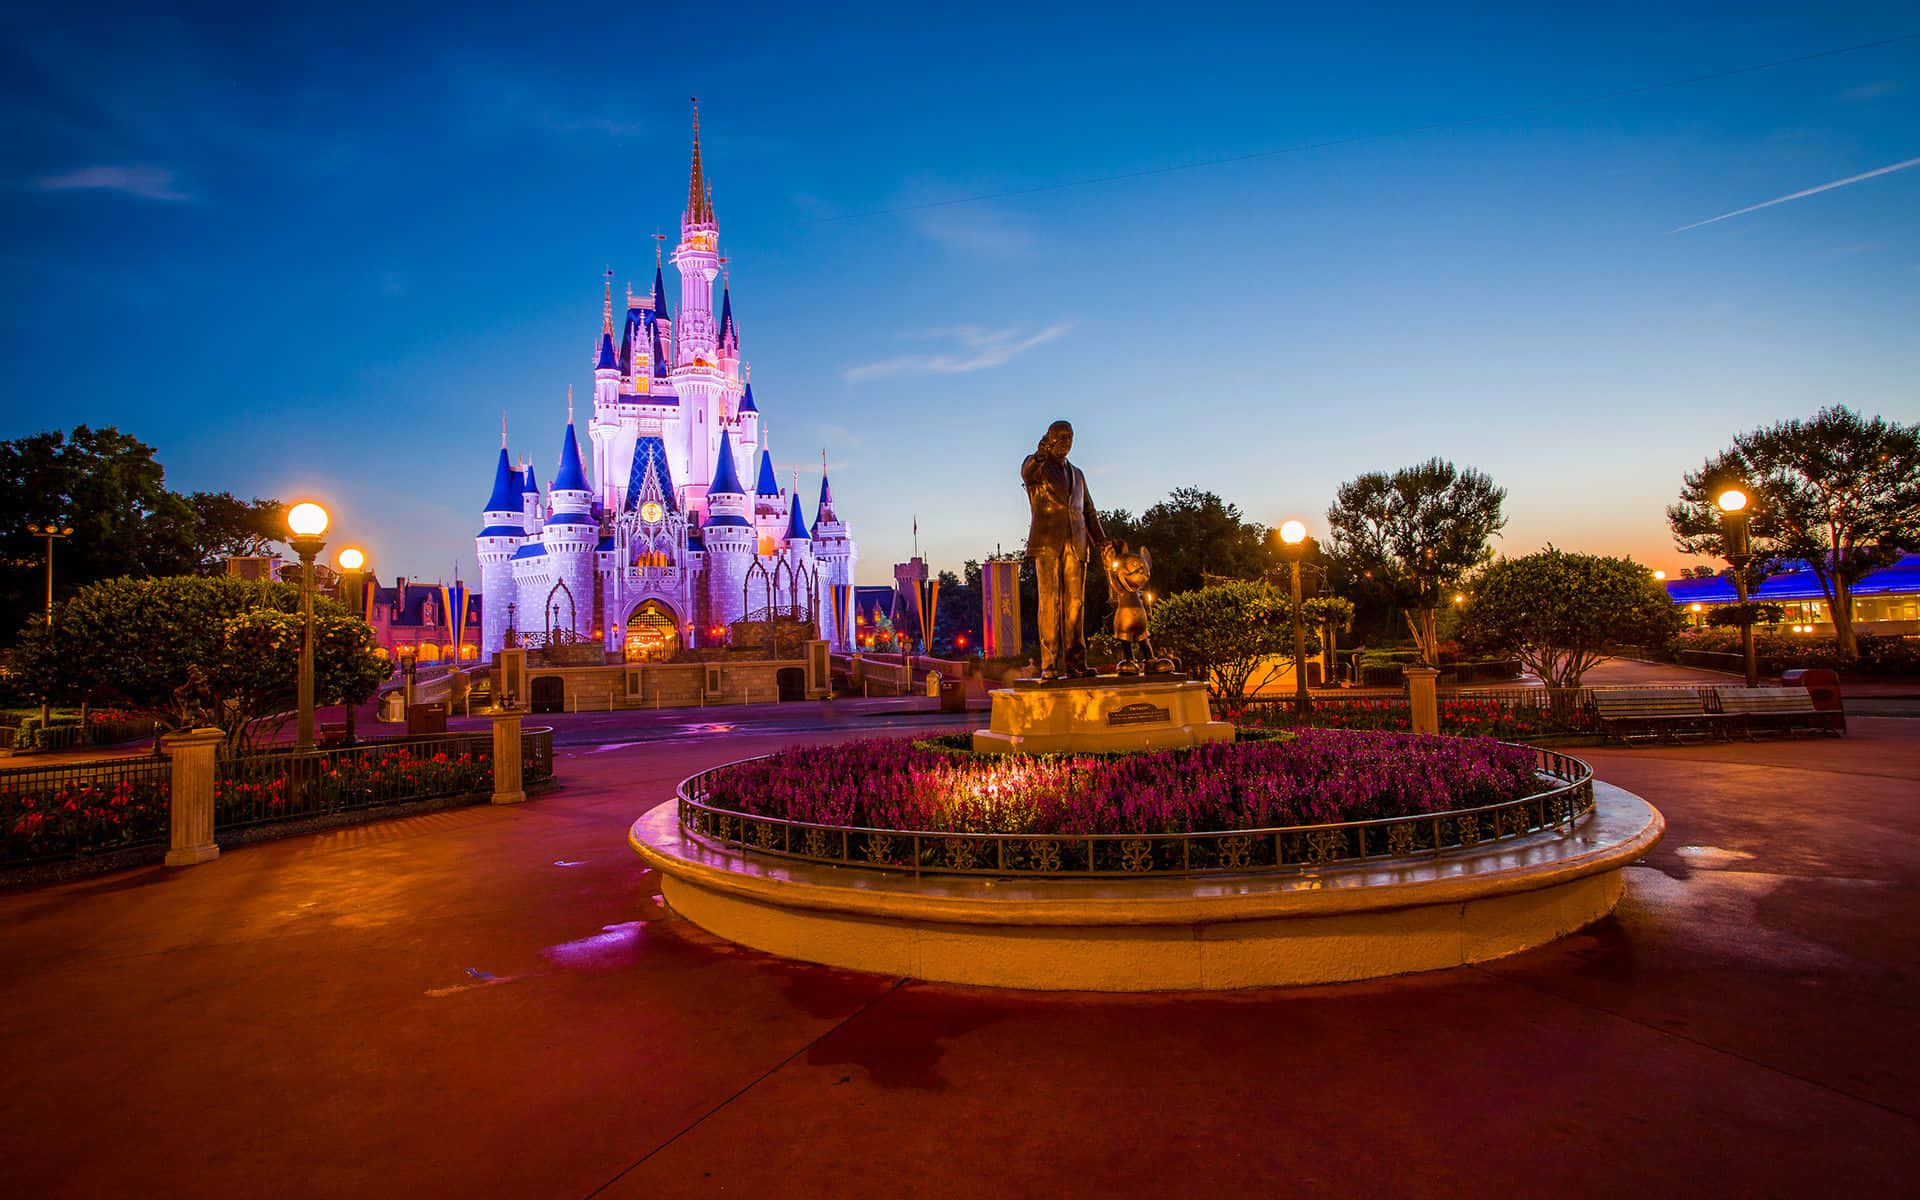 Cinderellaschloss Bei Nacht Im Disney World.